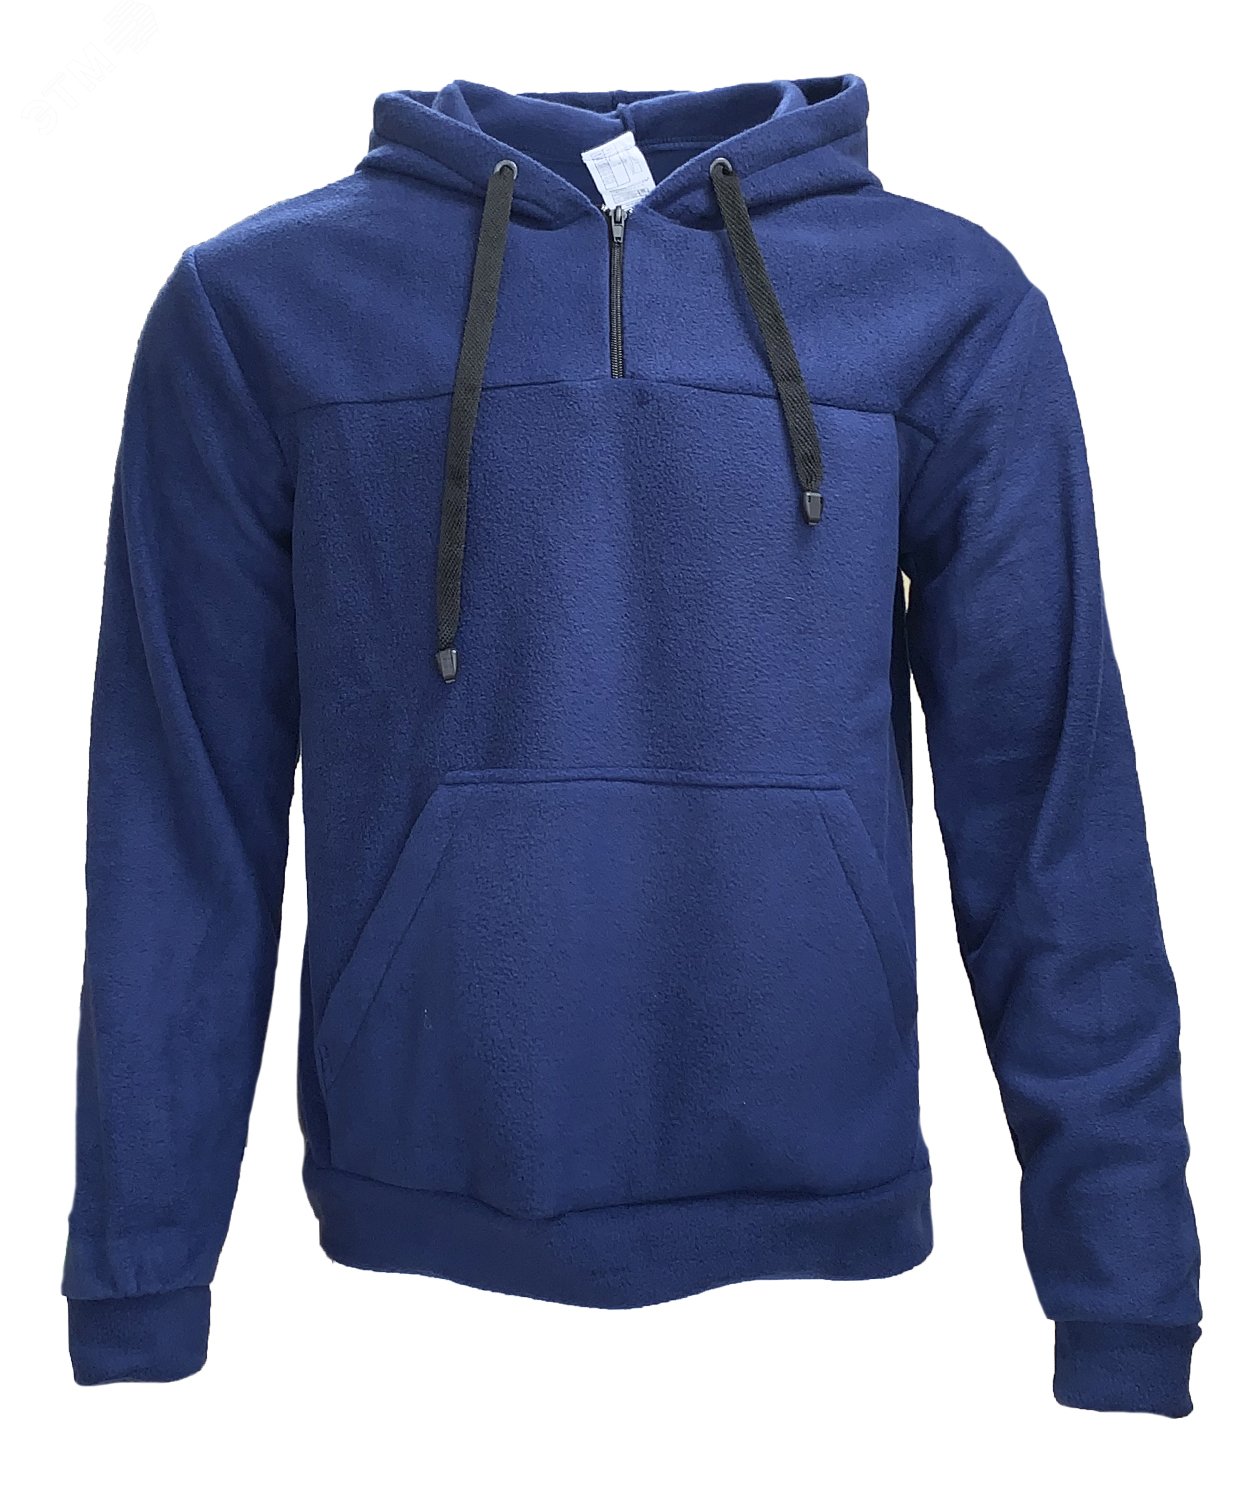 Куртка Etalon Travel TM Sprut с капюшоном, цвет темно-синий 52-54 104-108/182-188 130793 Эталон-Спецодежда - превью